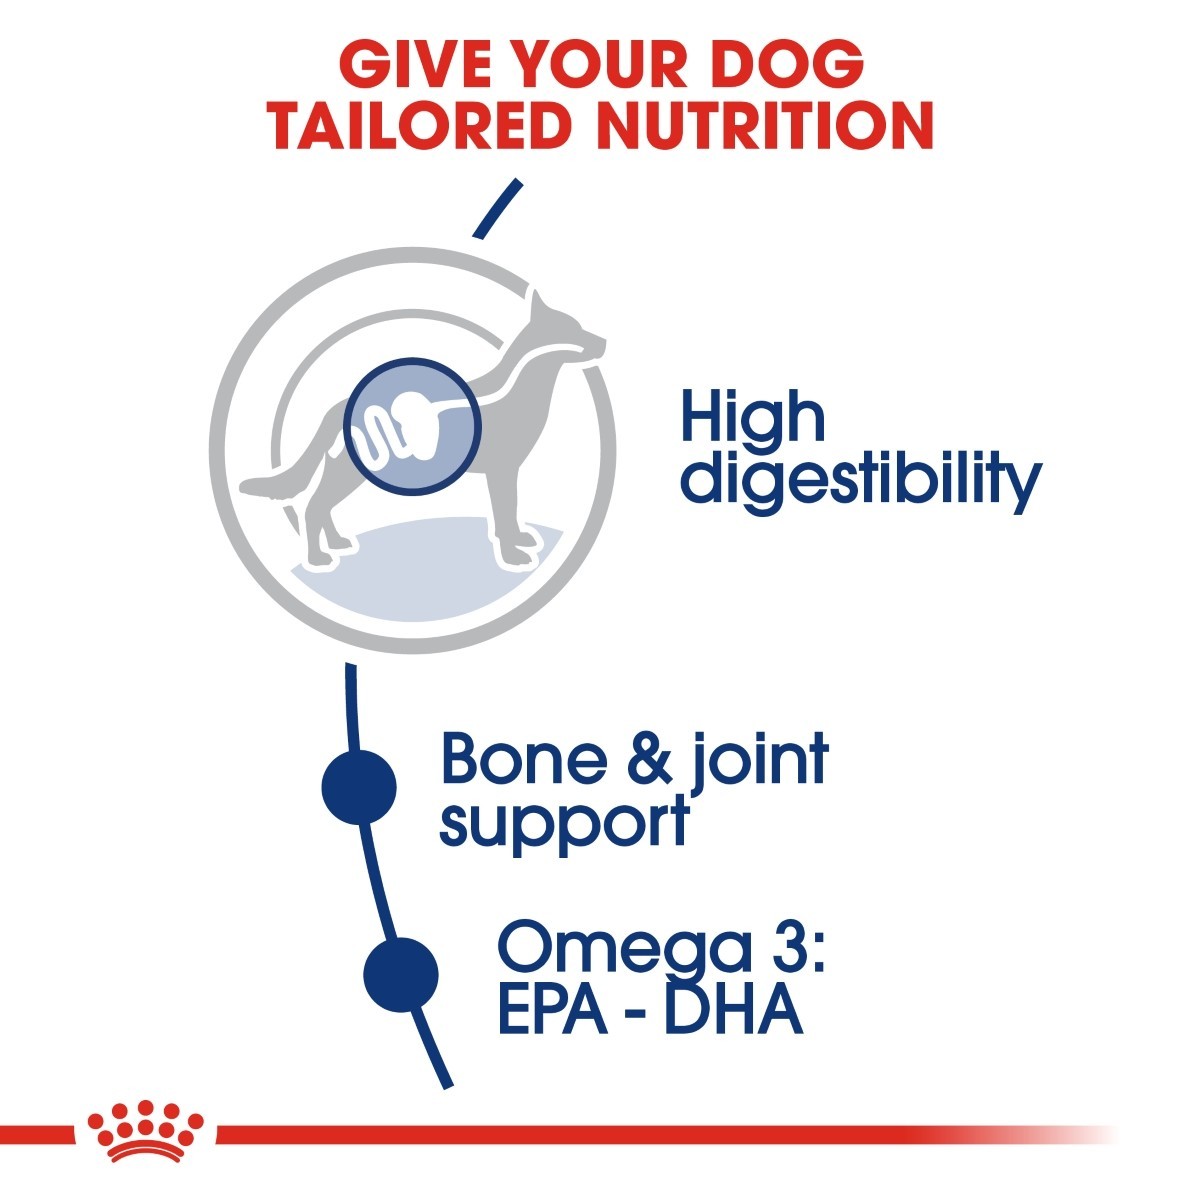 Royal Canin Maxi Adult Dry Dog Food - Targa Pet Shop